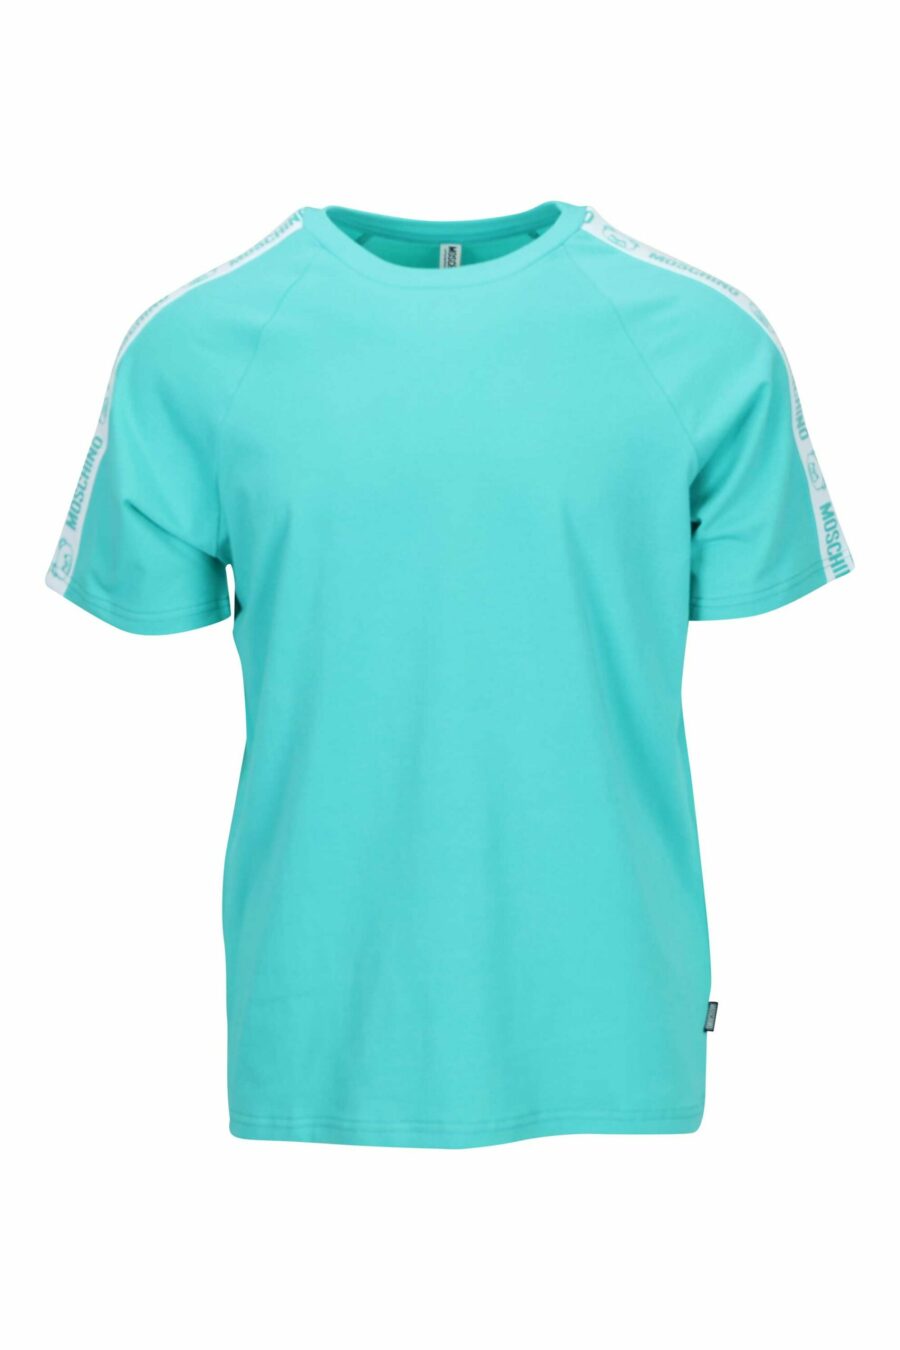 T-shirt bleu aigue-marine avec logo d'ours "underbear" sur la bande d'épaule - 667113602400 scaled